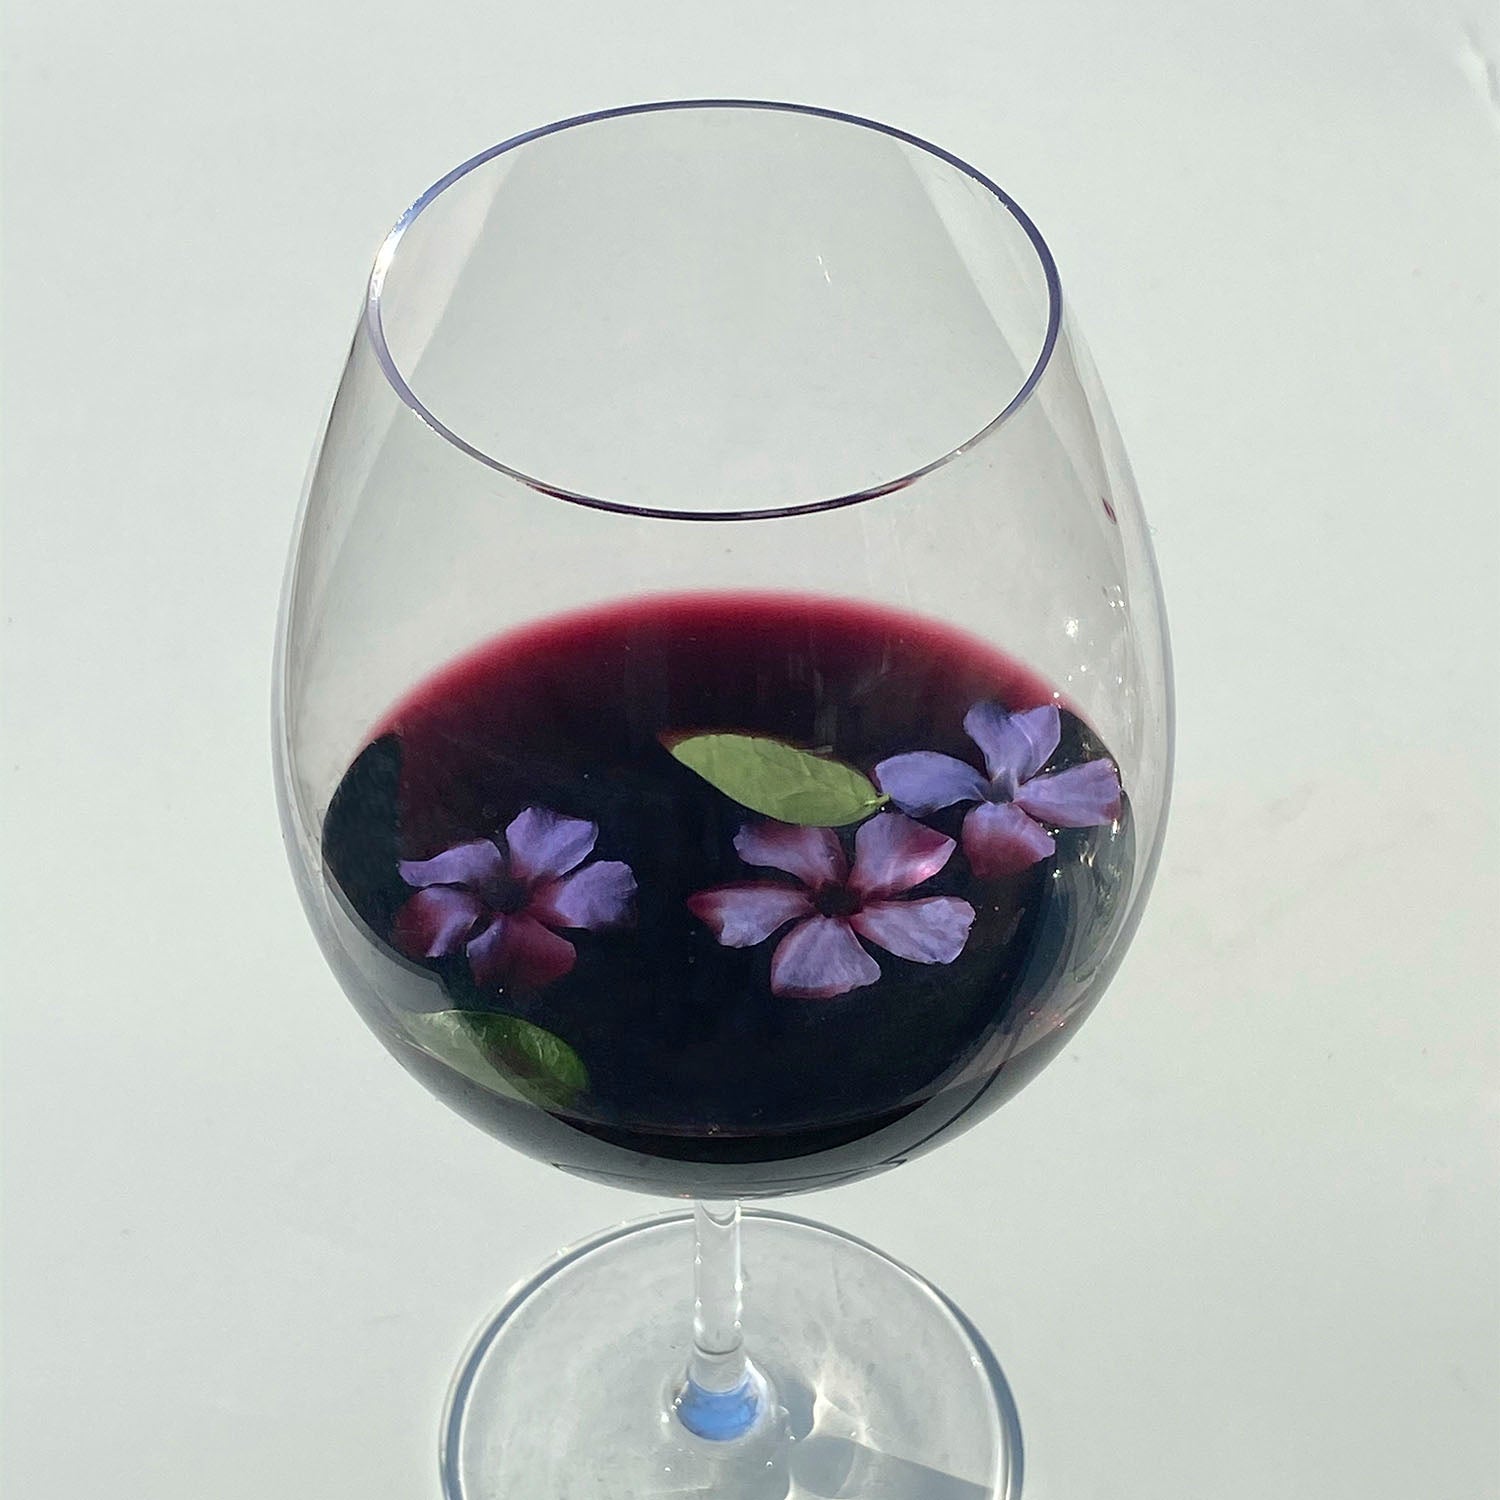 Promoción 3x2 - Vino Tinto Sutter Home Cabernet Sauvignon de 750 ml